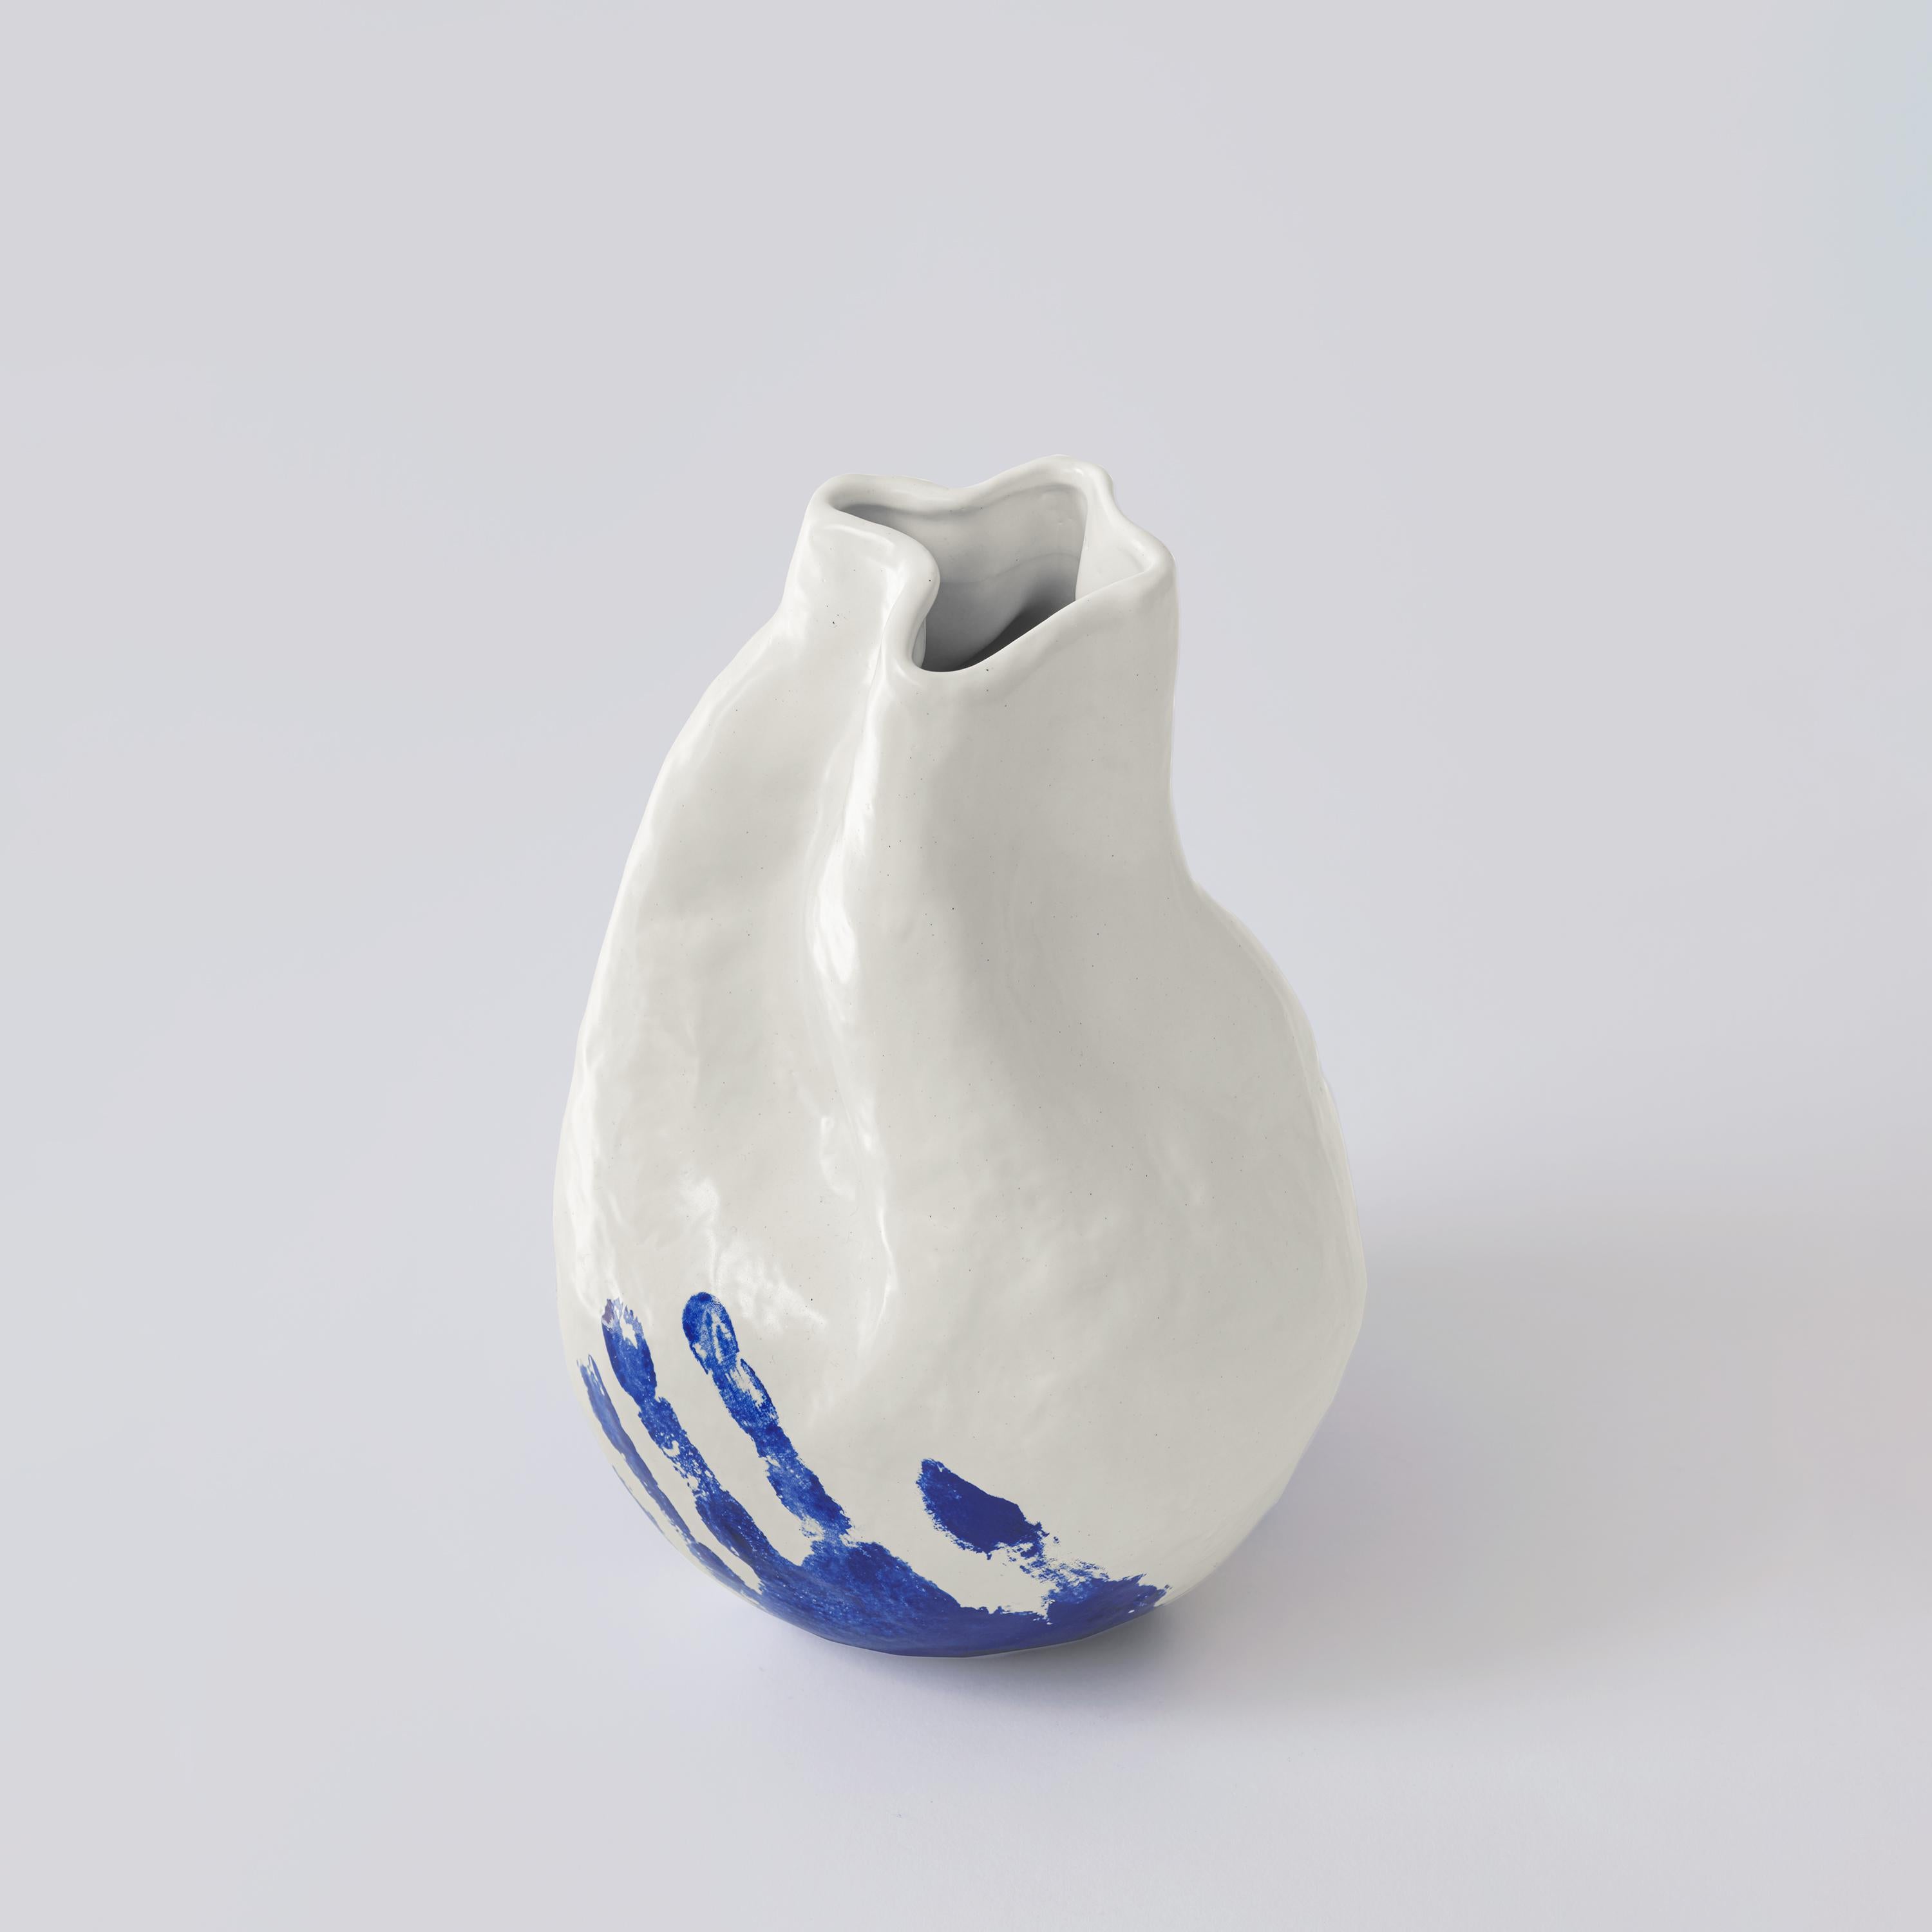 Ce vase en porcelaine fabriqué à la main de la Collection Vibrant Touch présente un jeu tactile de textures, avec une finition blanche brillante qui contraste avec une empreinte de main bleue audacieuse à sa base. La forme organique du vase, libre